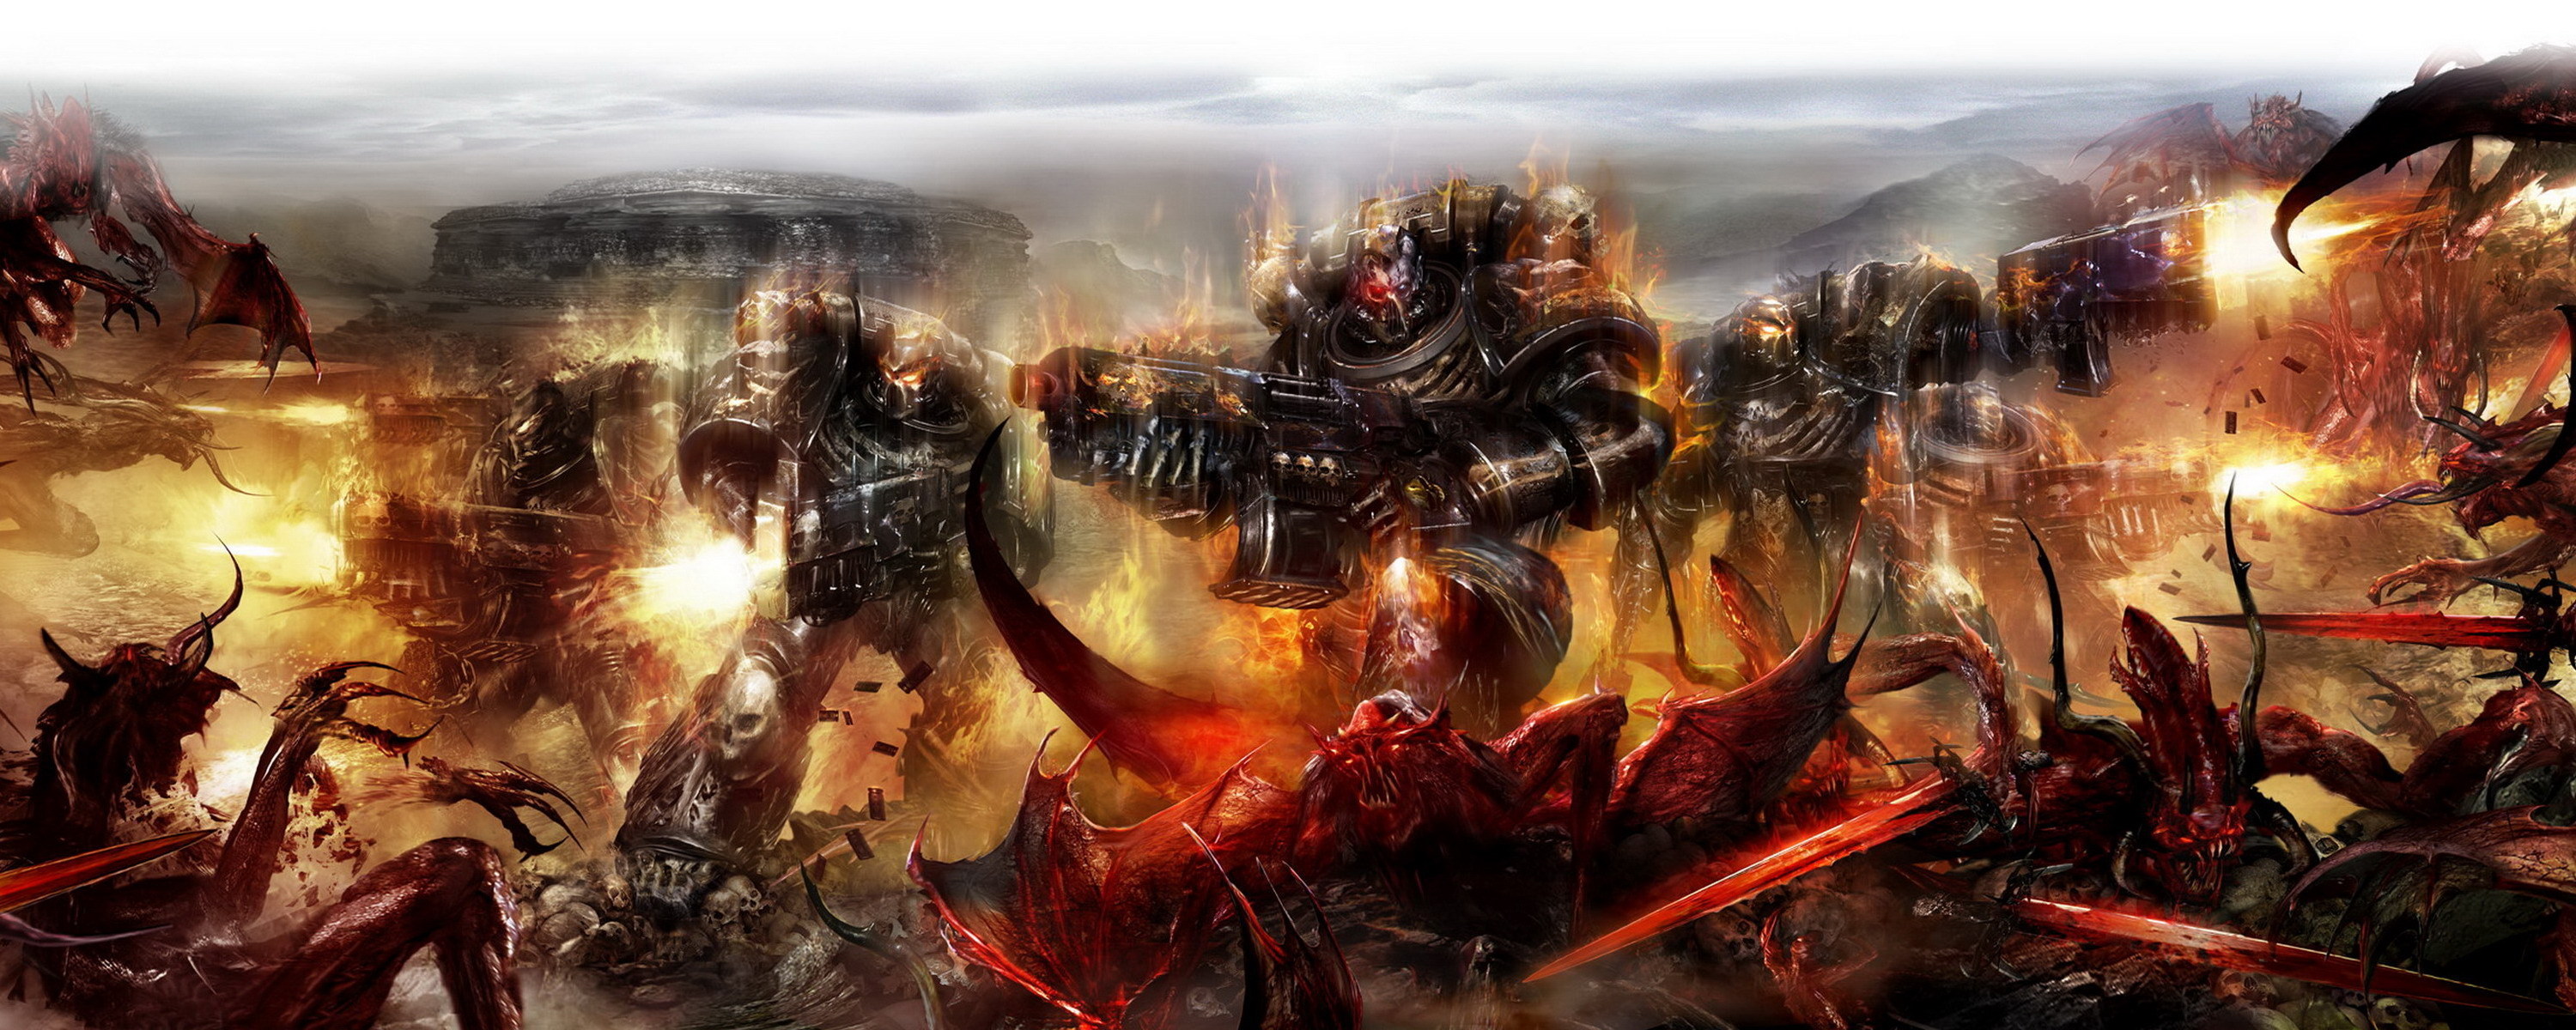 Free download wallpaper Warhammer, Warhammer 40K, Video Game on your PC desktop